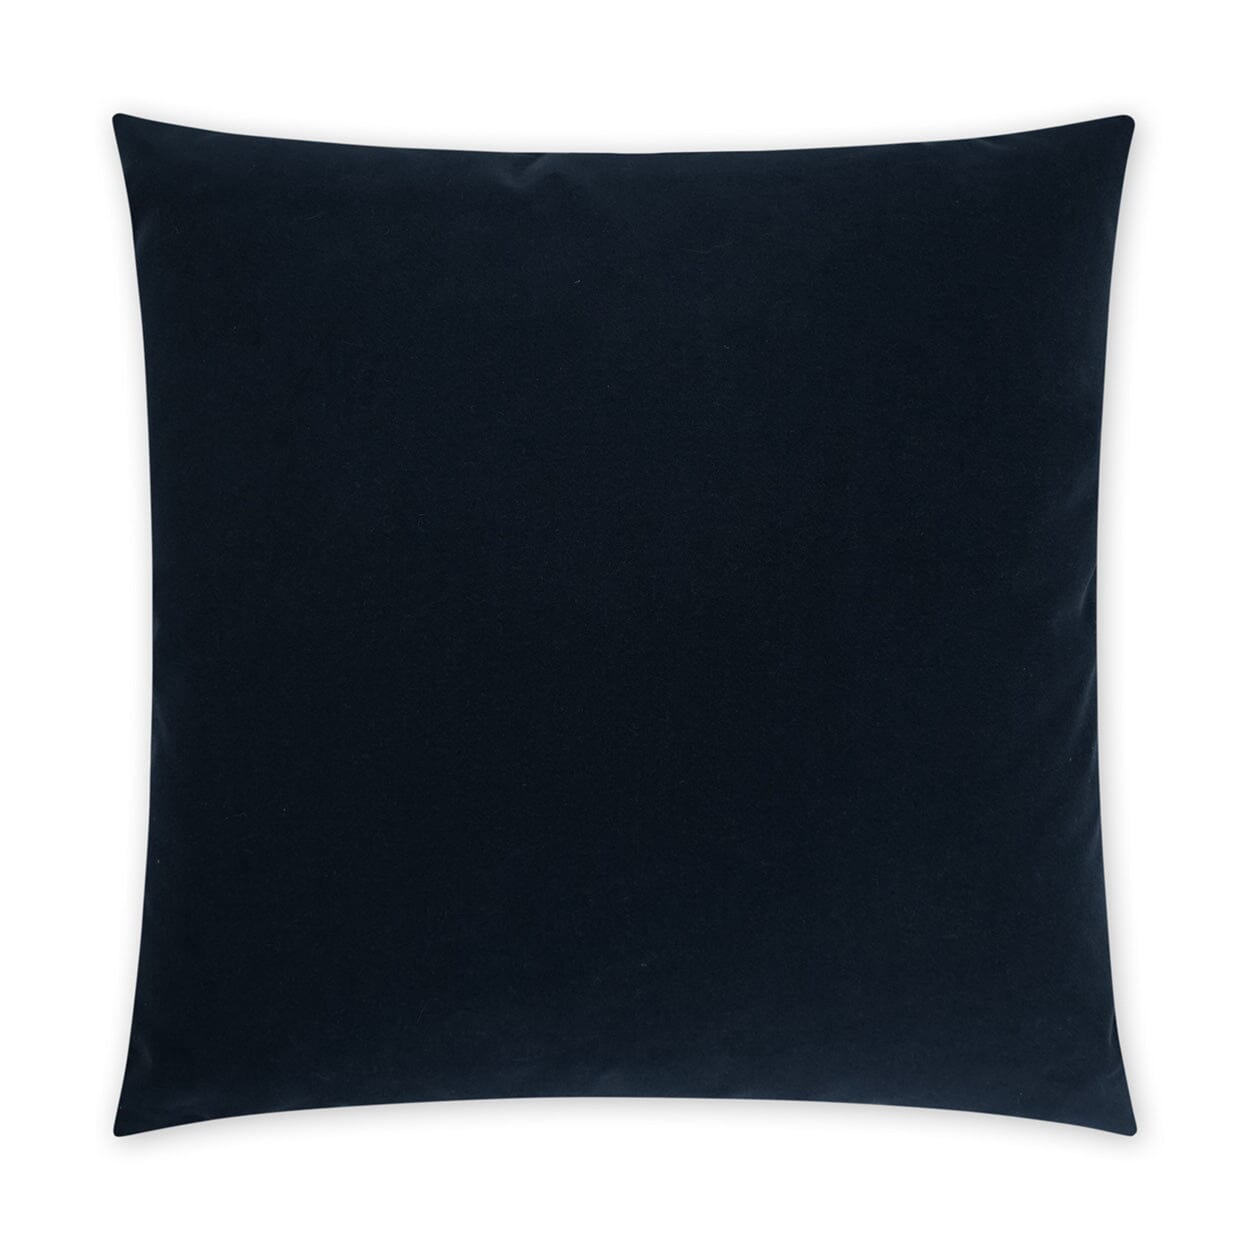 D.V. Kap 22" x 22" Outdoor Throw Pillow | Sundance Navy Pillows D.V Kap Outdoor